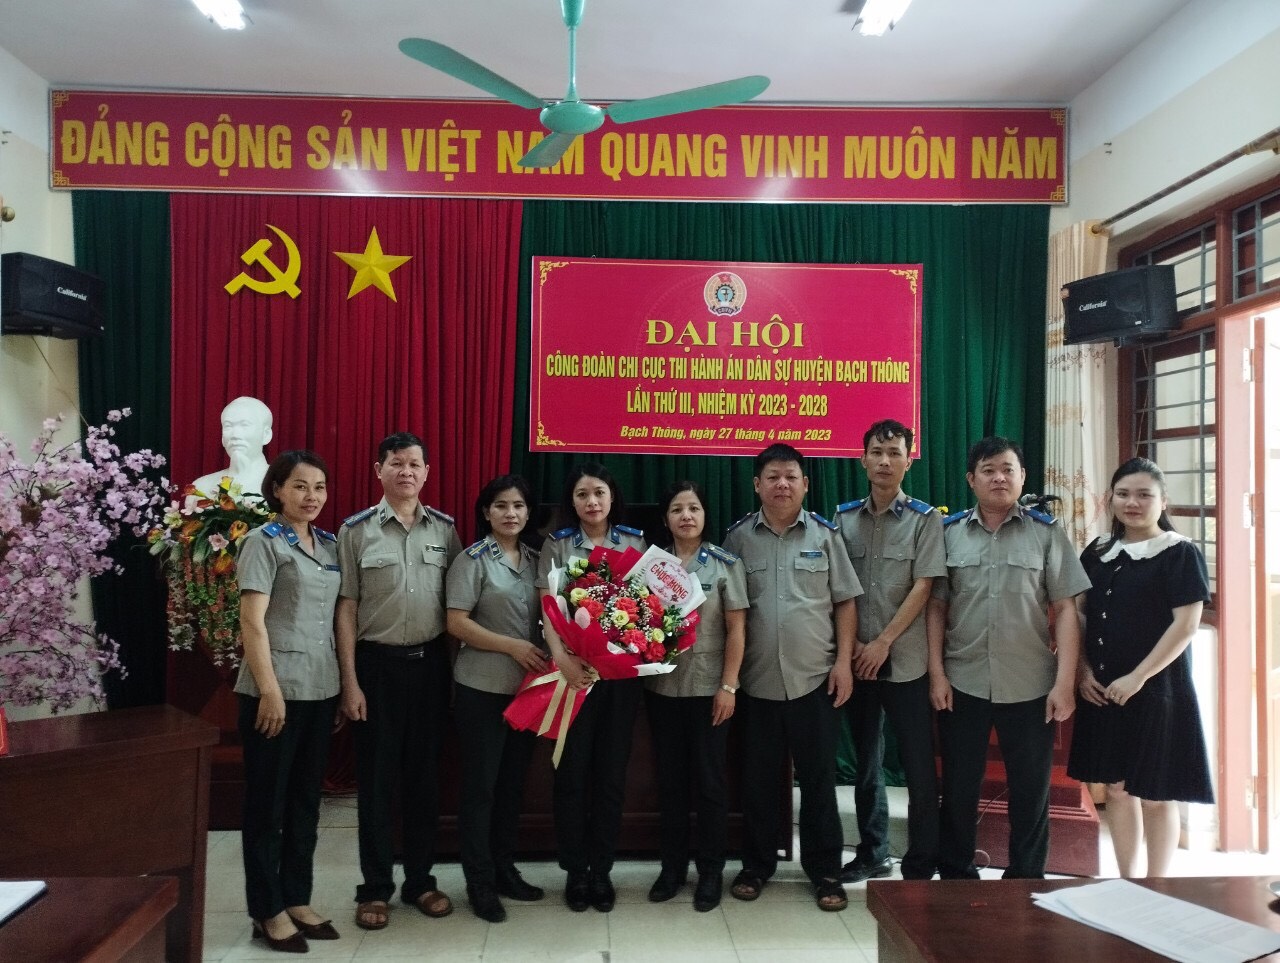 Chi cục THADS huyện Bạch Thông tổ chức Đại hội Công đoàn lần thứ III, nhiệm kỳ 2023 – 2028.